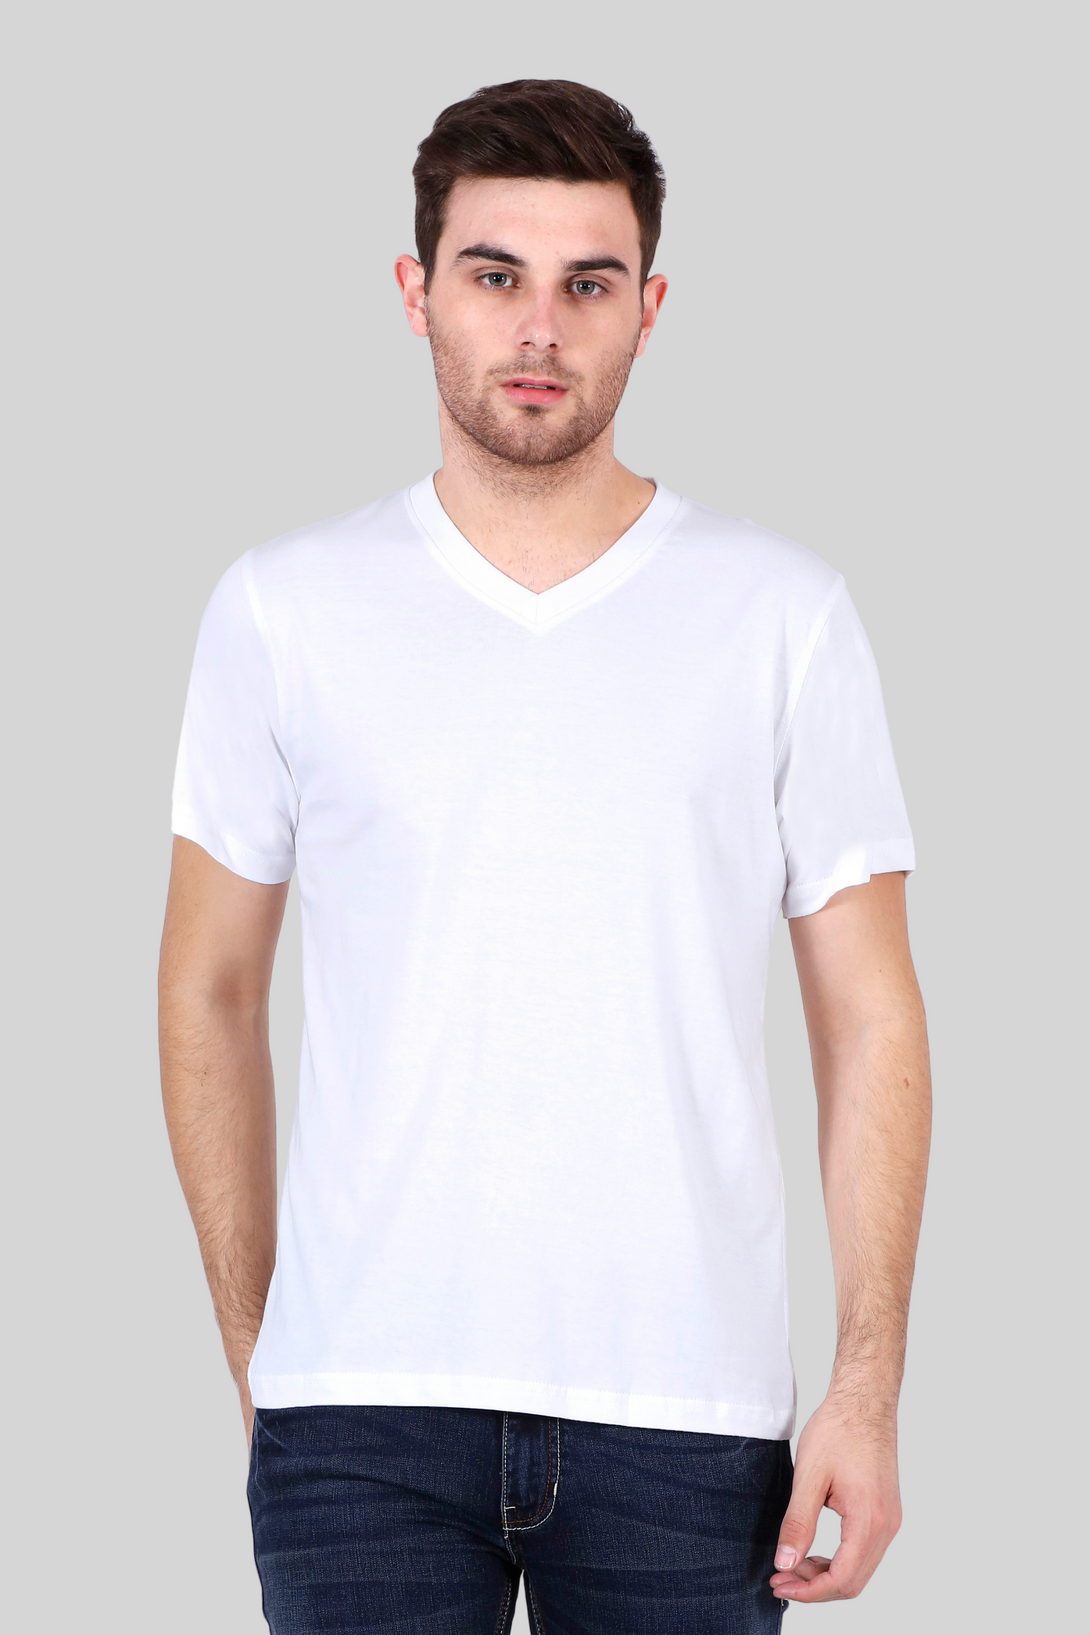 White V Neck T-Shirt For Men - WowWaves - 1